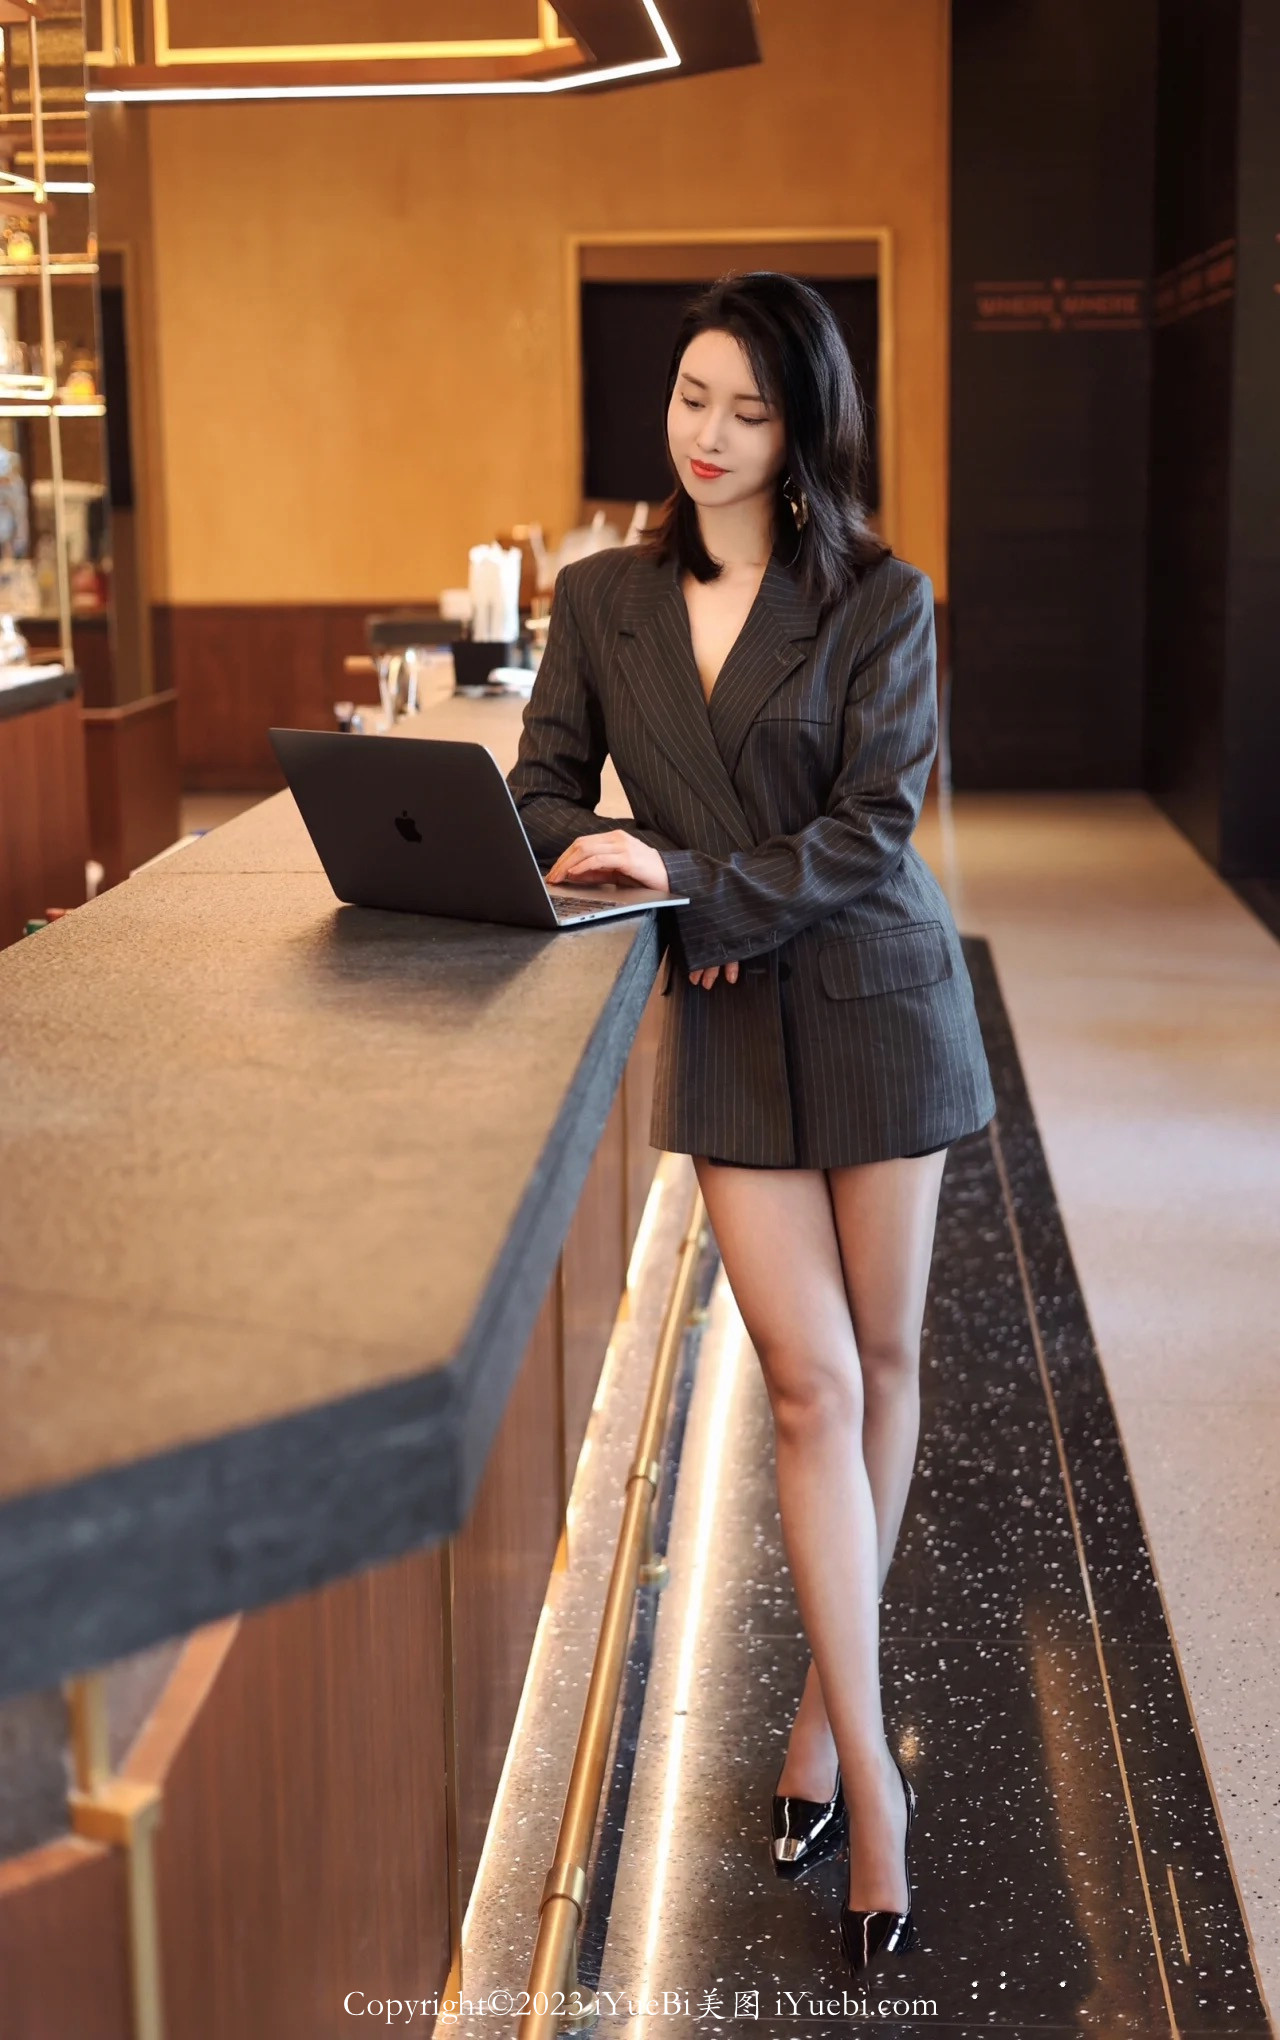 酒店吧台前正在使用笔记本电脑的大长腿服务员